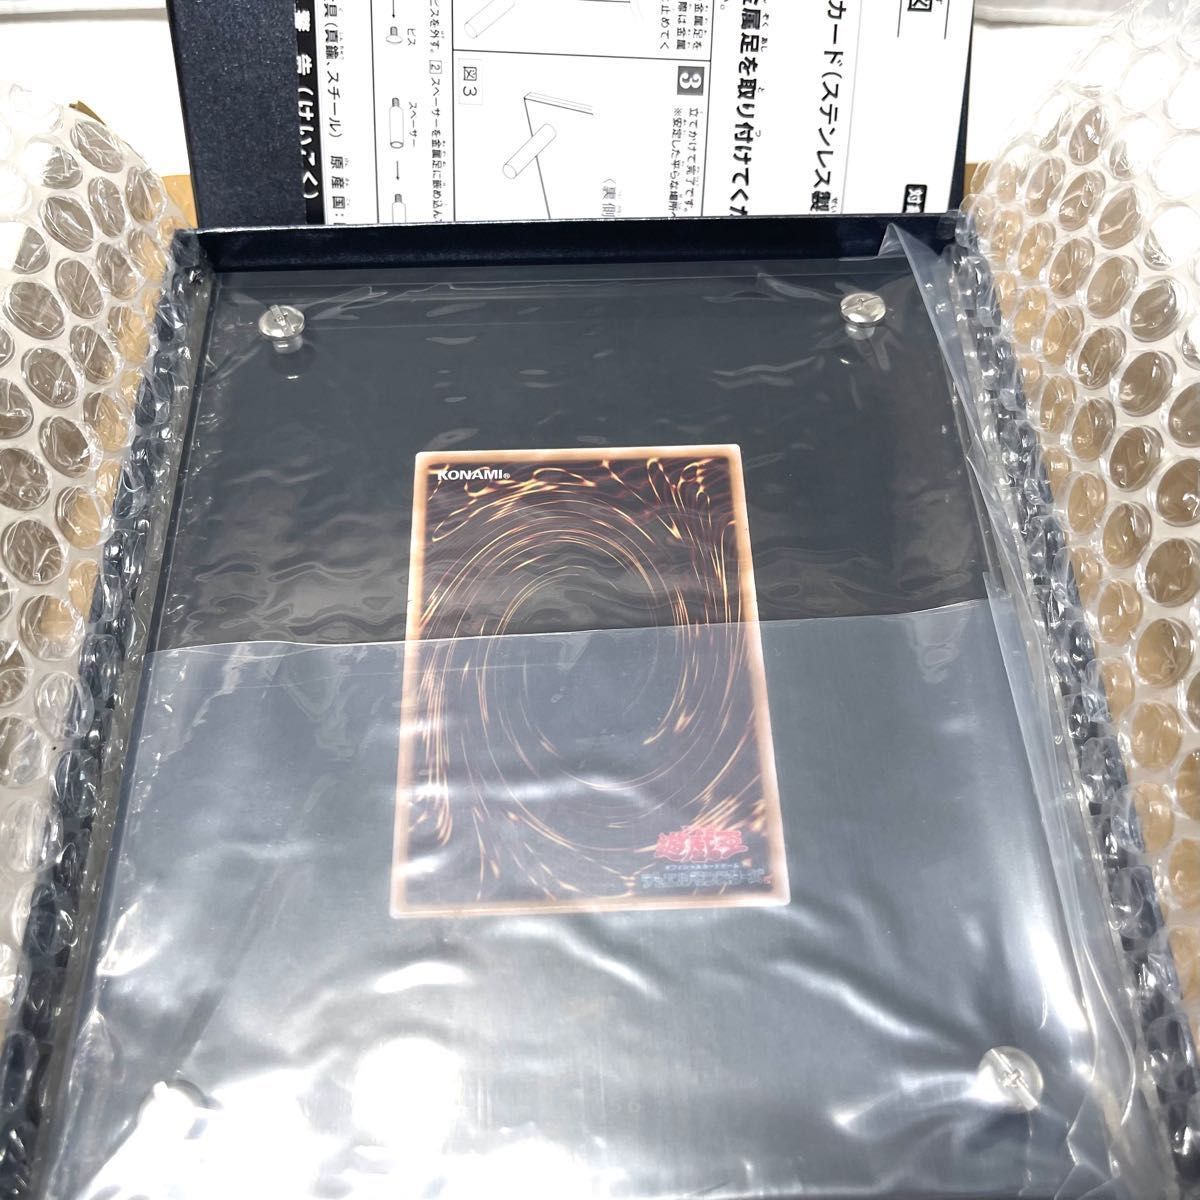 【新品】遊戯王OCGデュエルモンスターズ 「ブラック・マジシャン」スペシャルカード（ステンレス製） No.656